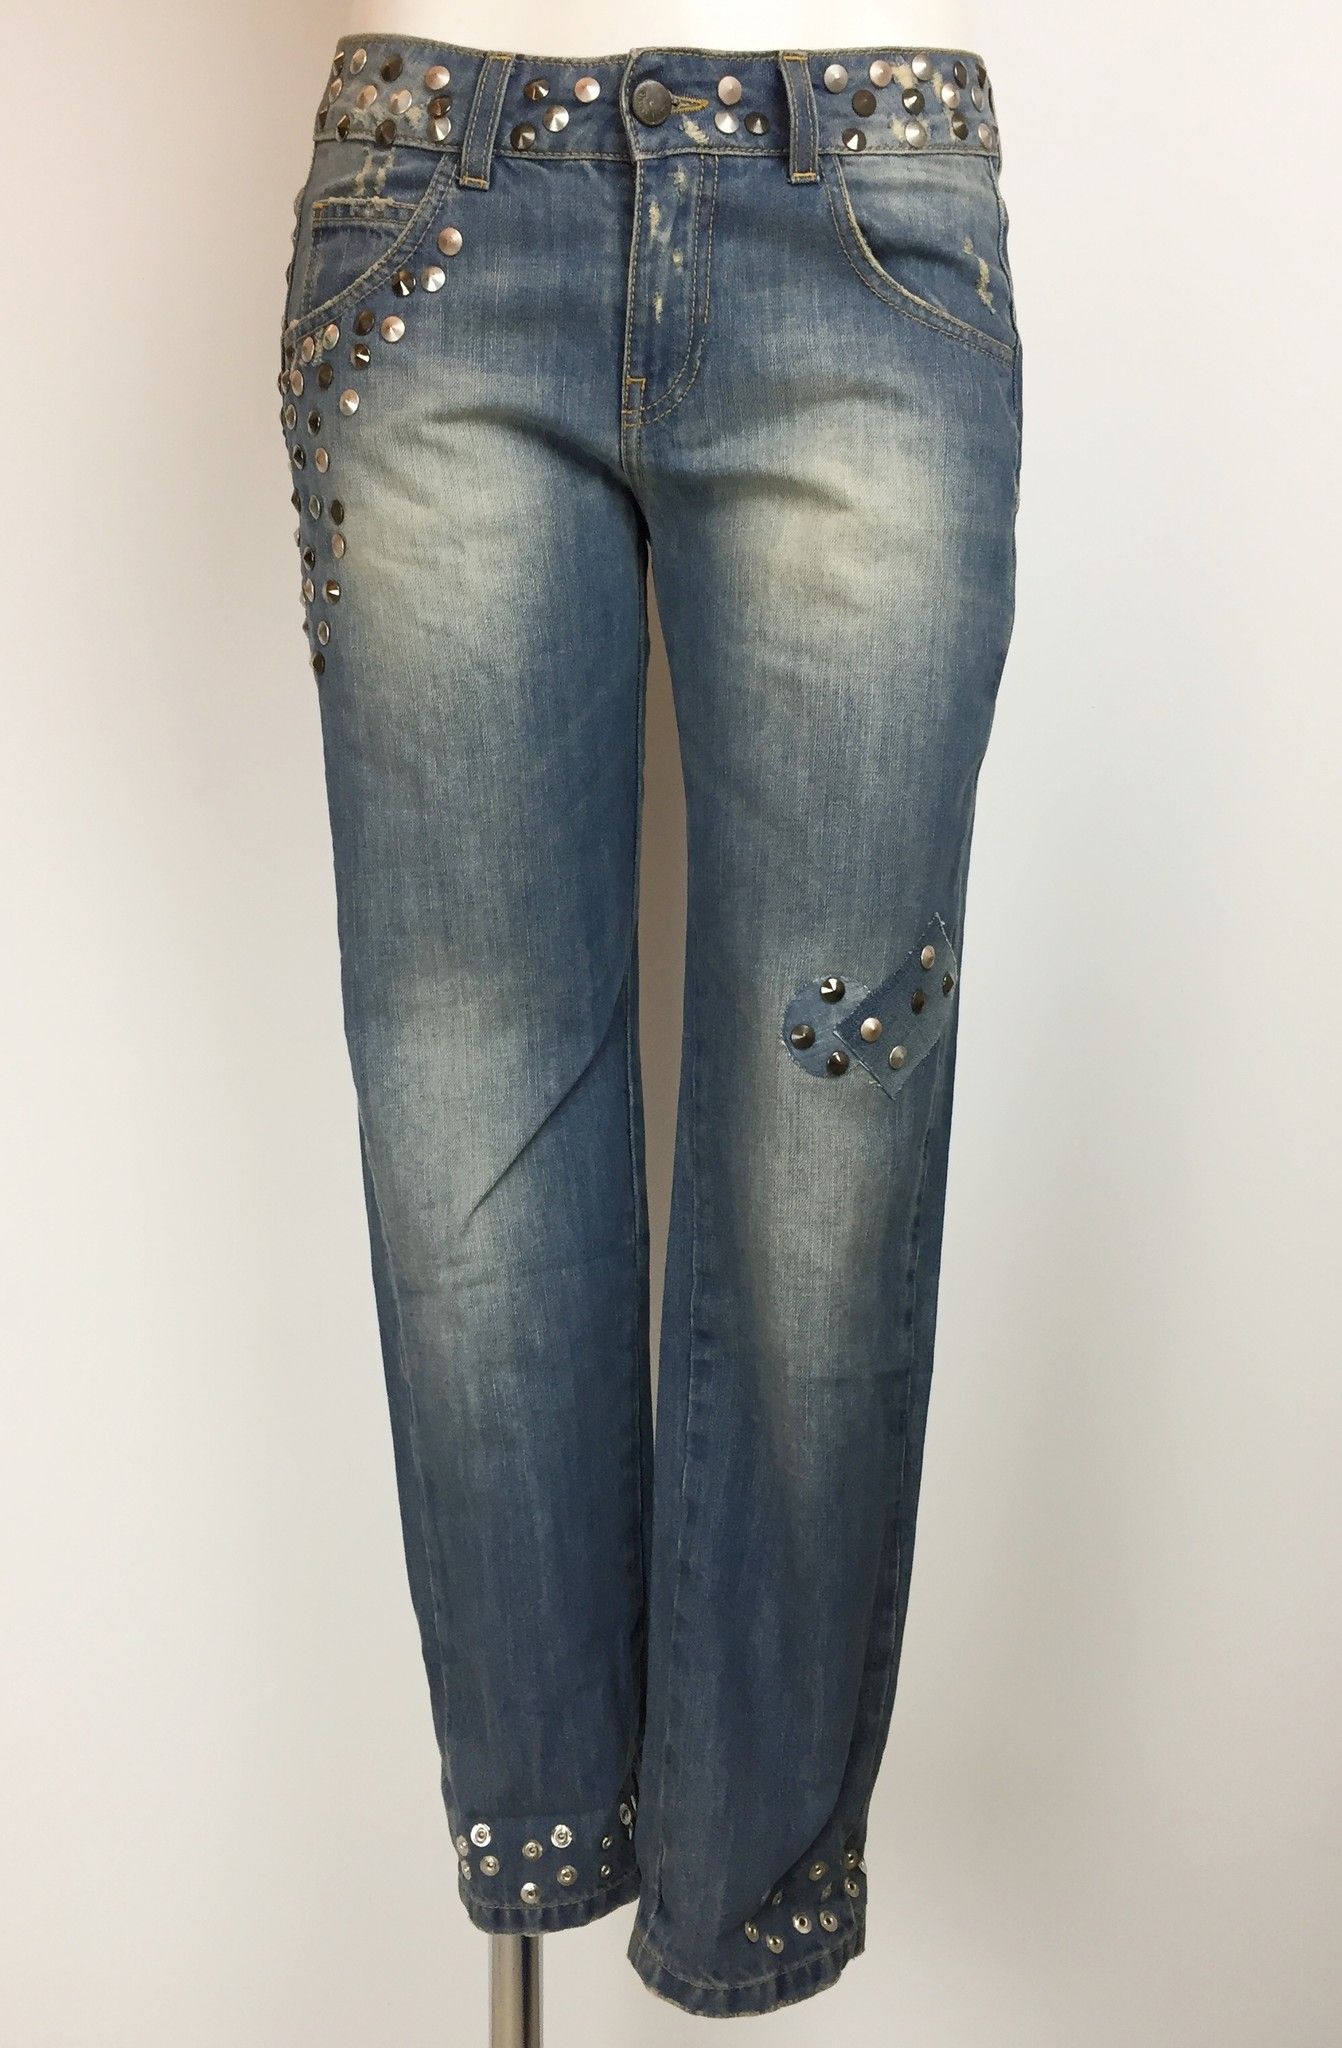 Adele Fado Boyfriend Model Studded Jeans Cod.19922026